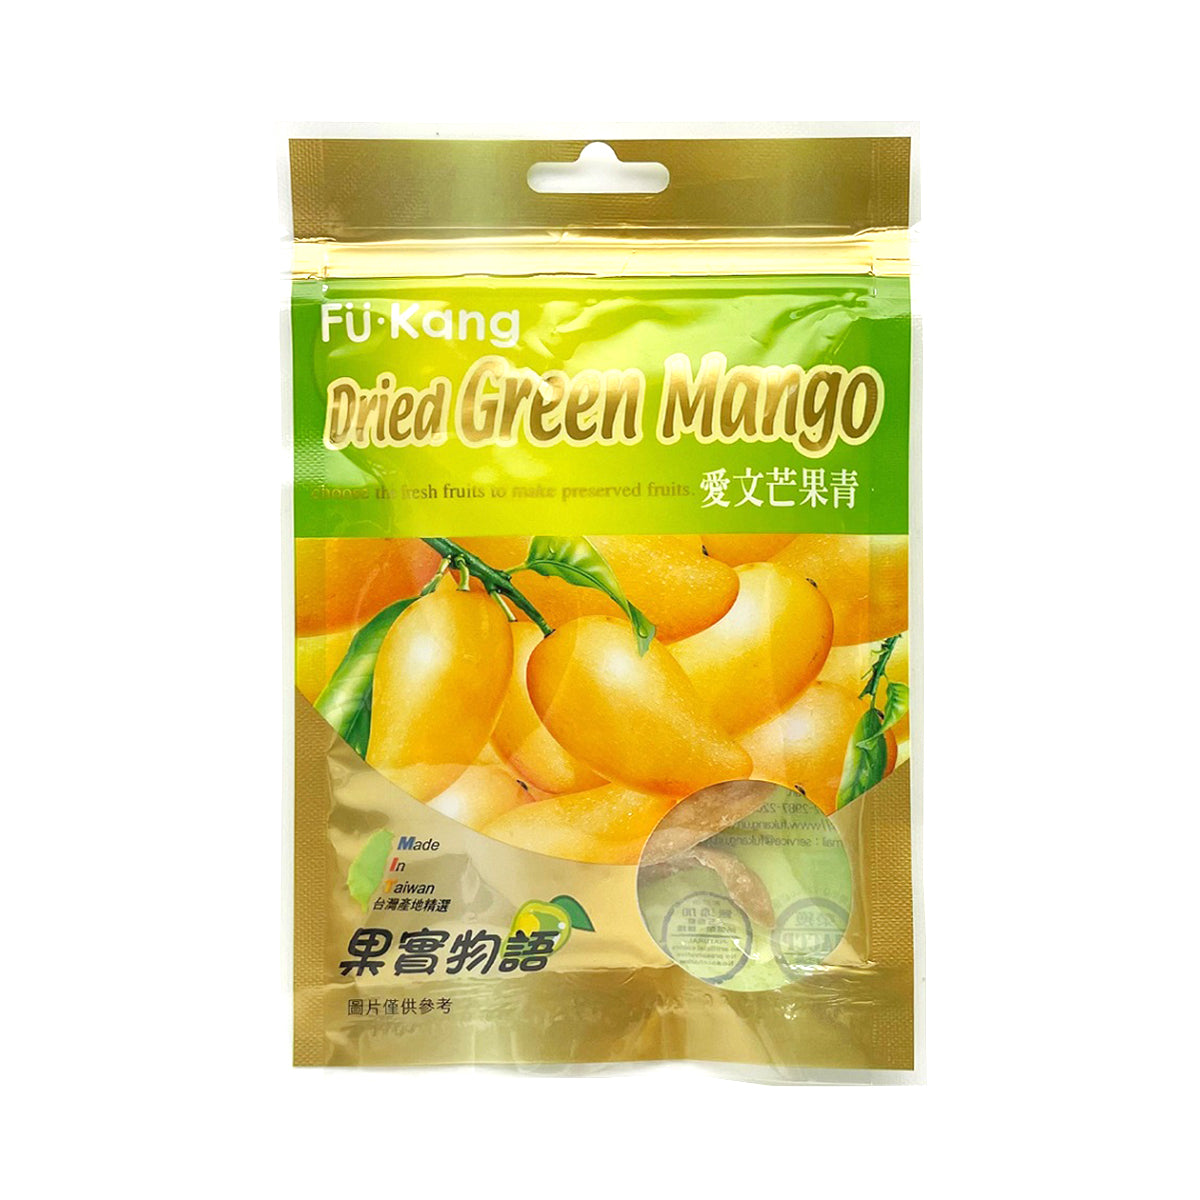 【FUKANG】 Dried Green Mango 50g